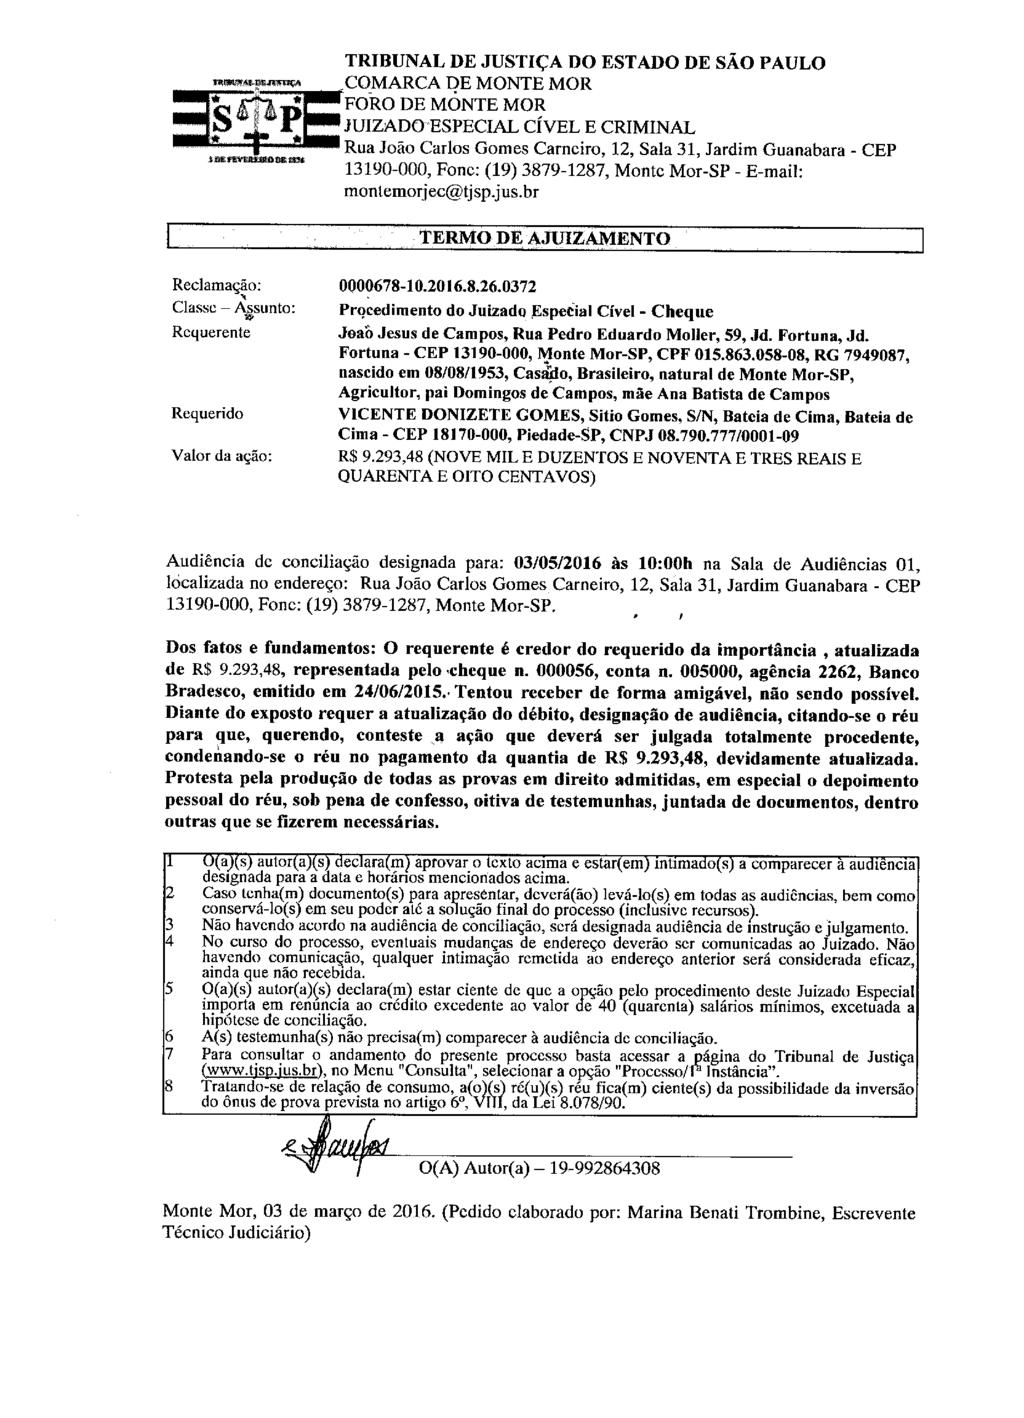 fls. 2 Este documento é cópia do original, assinado digitalmente por ELAINE CRISTINA FAUSTINO STEFFEN, liberado nos autos em 03/03/2016 às 16:10.